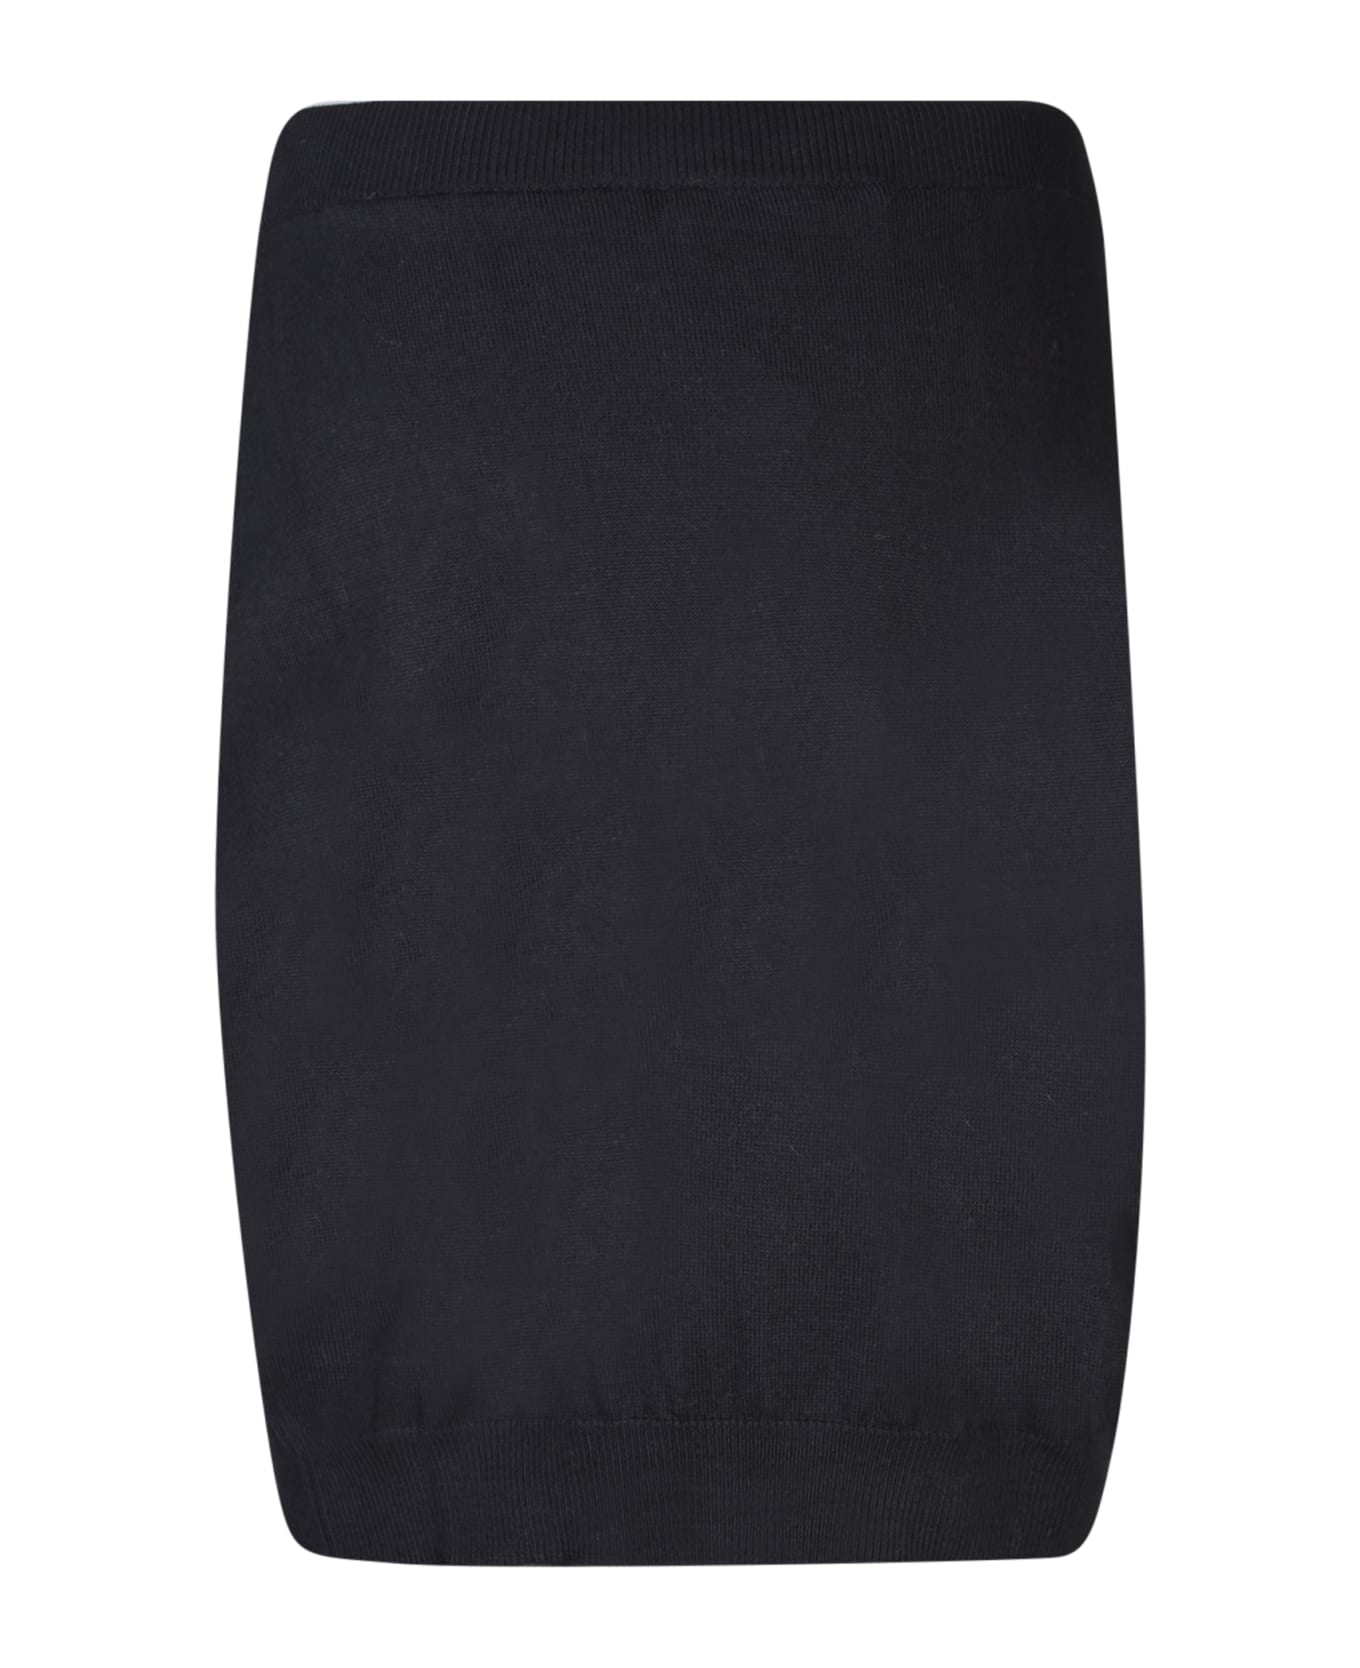 Vivienne Westwood Bea Black Mini Skirt - Black